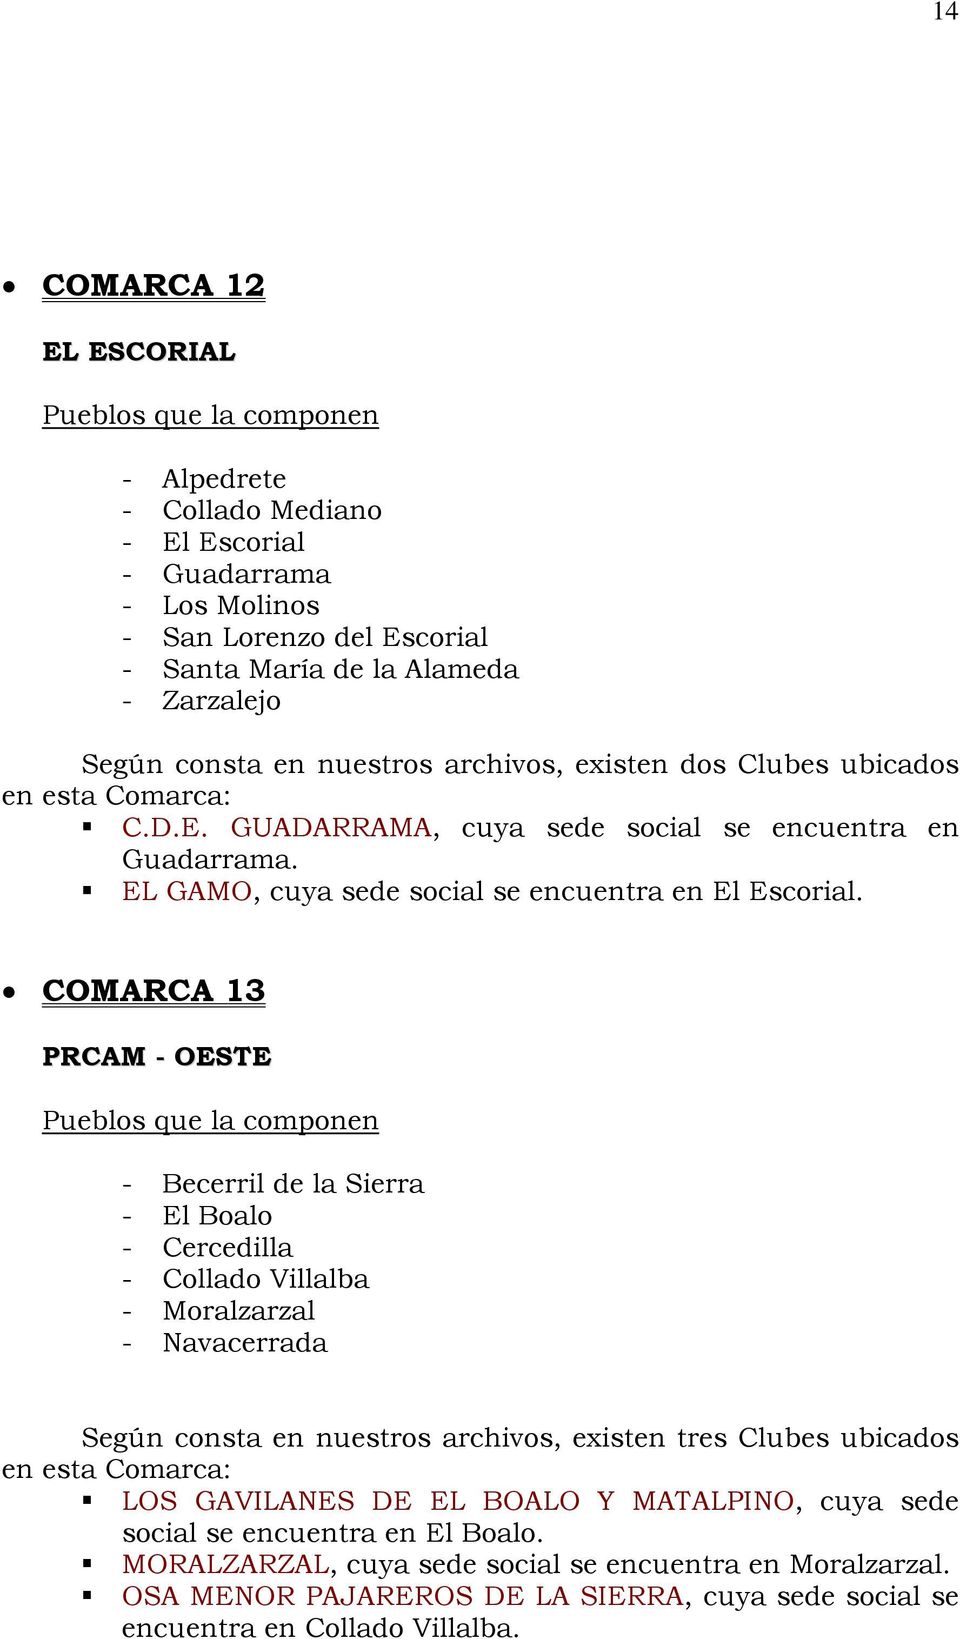 COMARCA 13 PRCAM - OESTE - Becerril de la Sierra - El Boalo - Cercedilla - Collado Villalba - Moralzarzal - Navacerrada Según consta en nuestros archivos, existen tres Clubes ubicados LOS